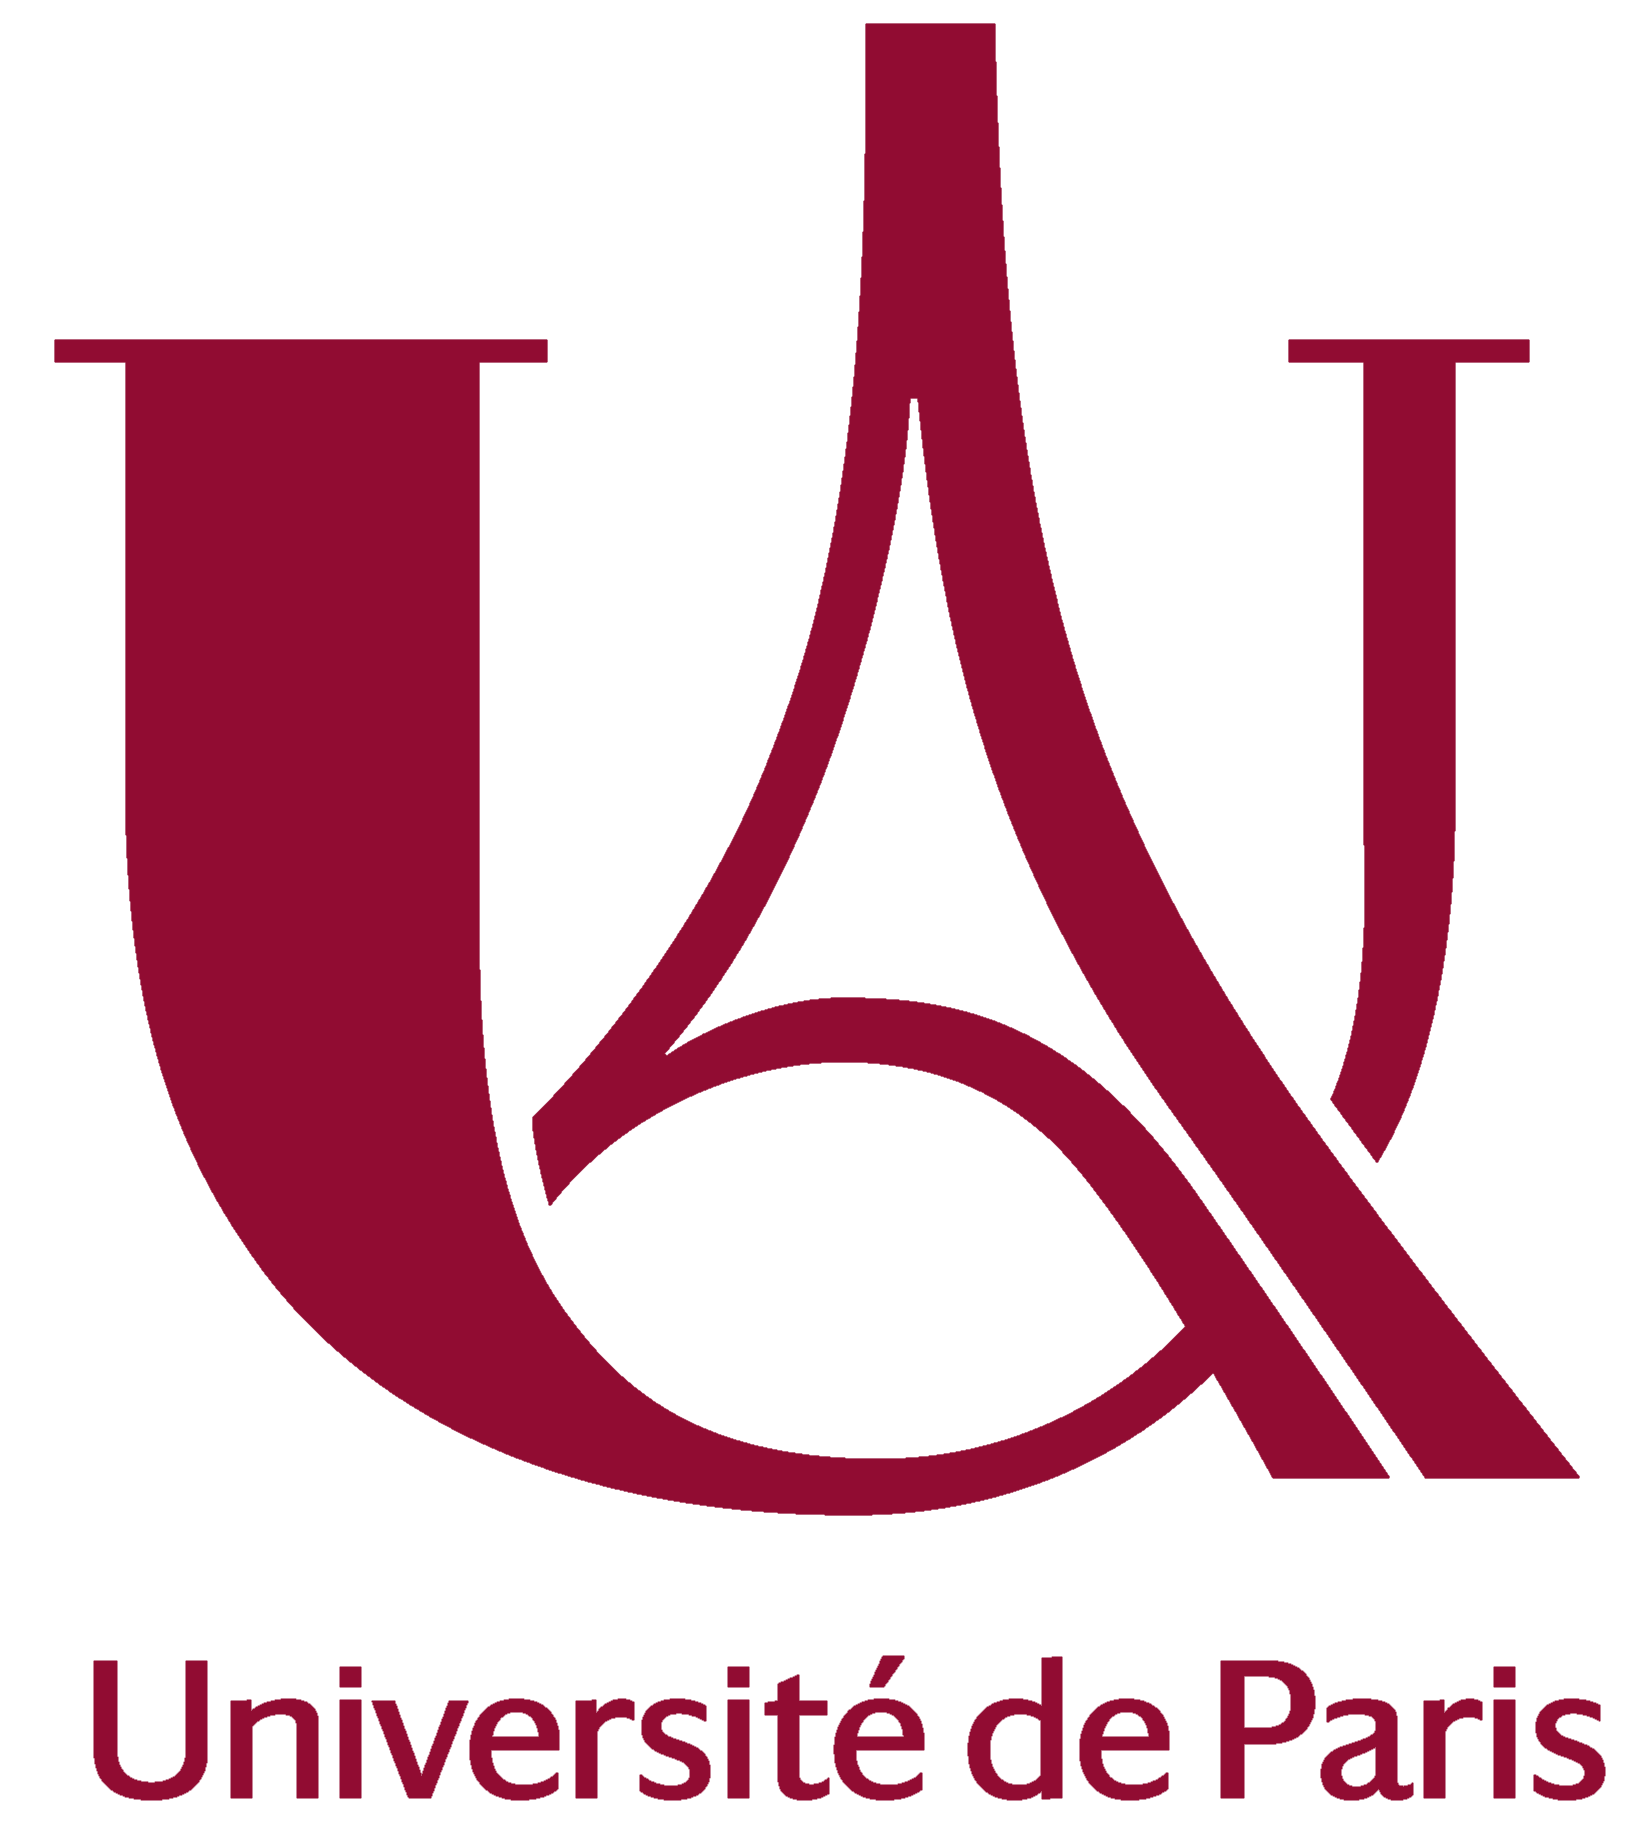 University of Paris (UParis)